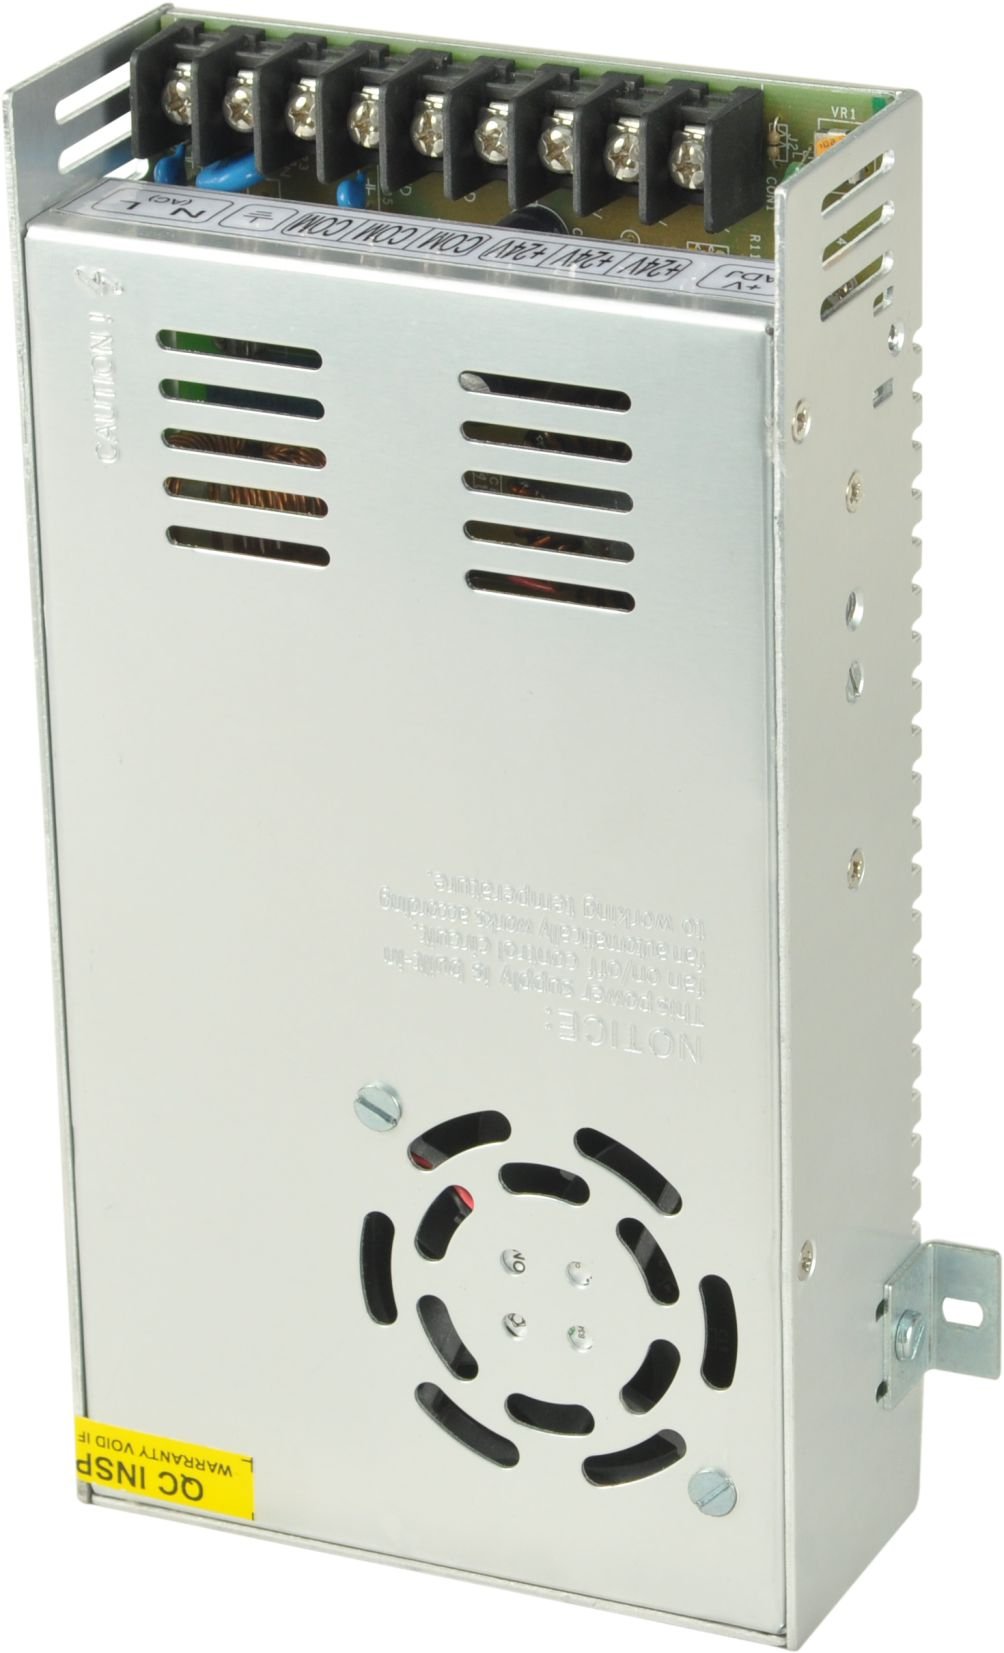 Lubi 12V 12A 145W Switch Mode Power Supply